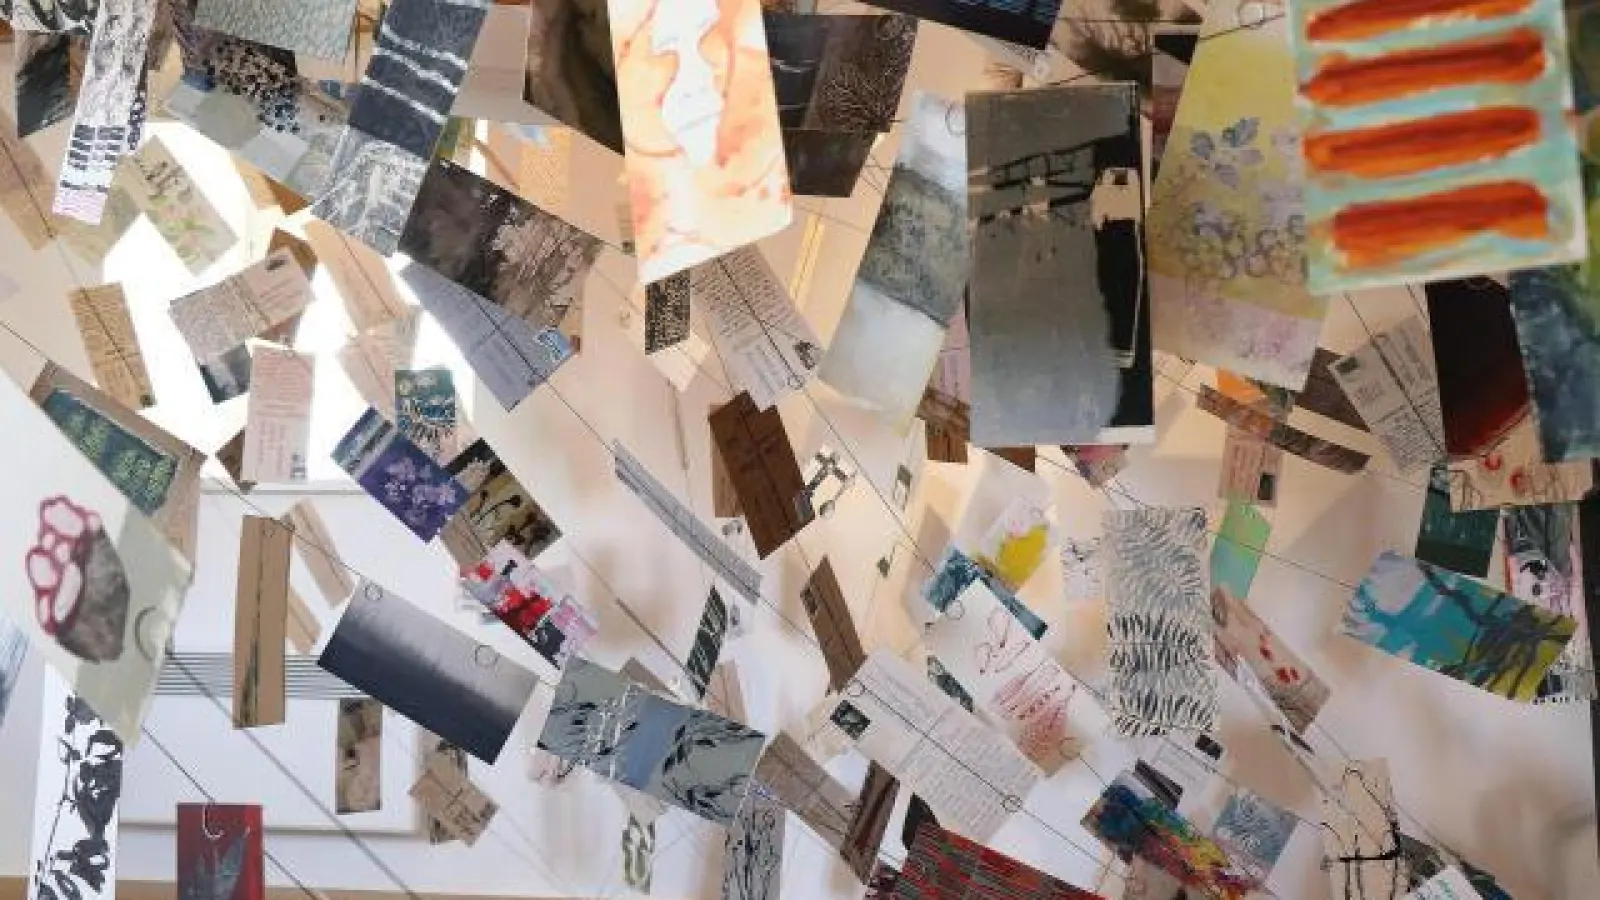 Gemeinschaftsprojekt   der drei Künstlerinnen: Etwa 350 privat geschriebene Postkarten sind im Aichacher Köglturm installiert und können zum Teil gelesen werden. 	Fotos: Claudia Neumüller (Fotos: Claudia Neumüller)